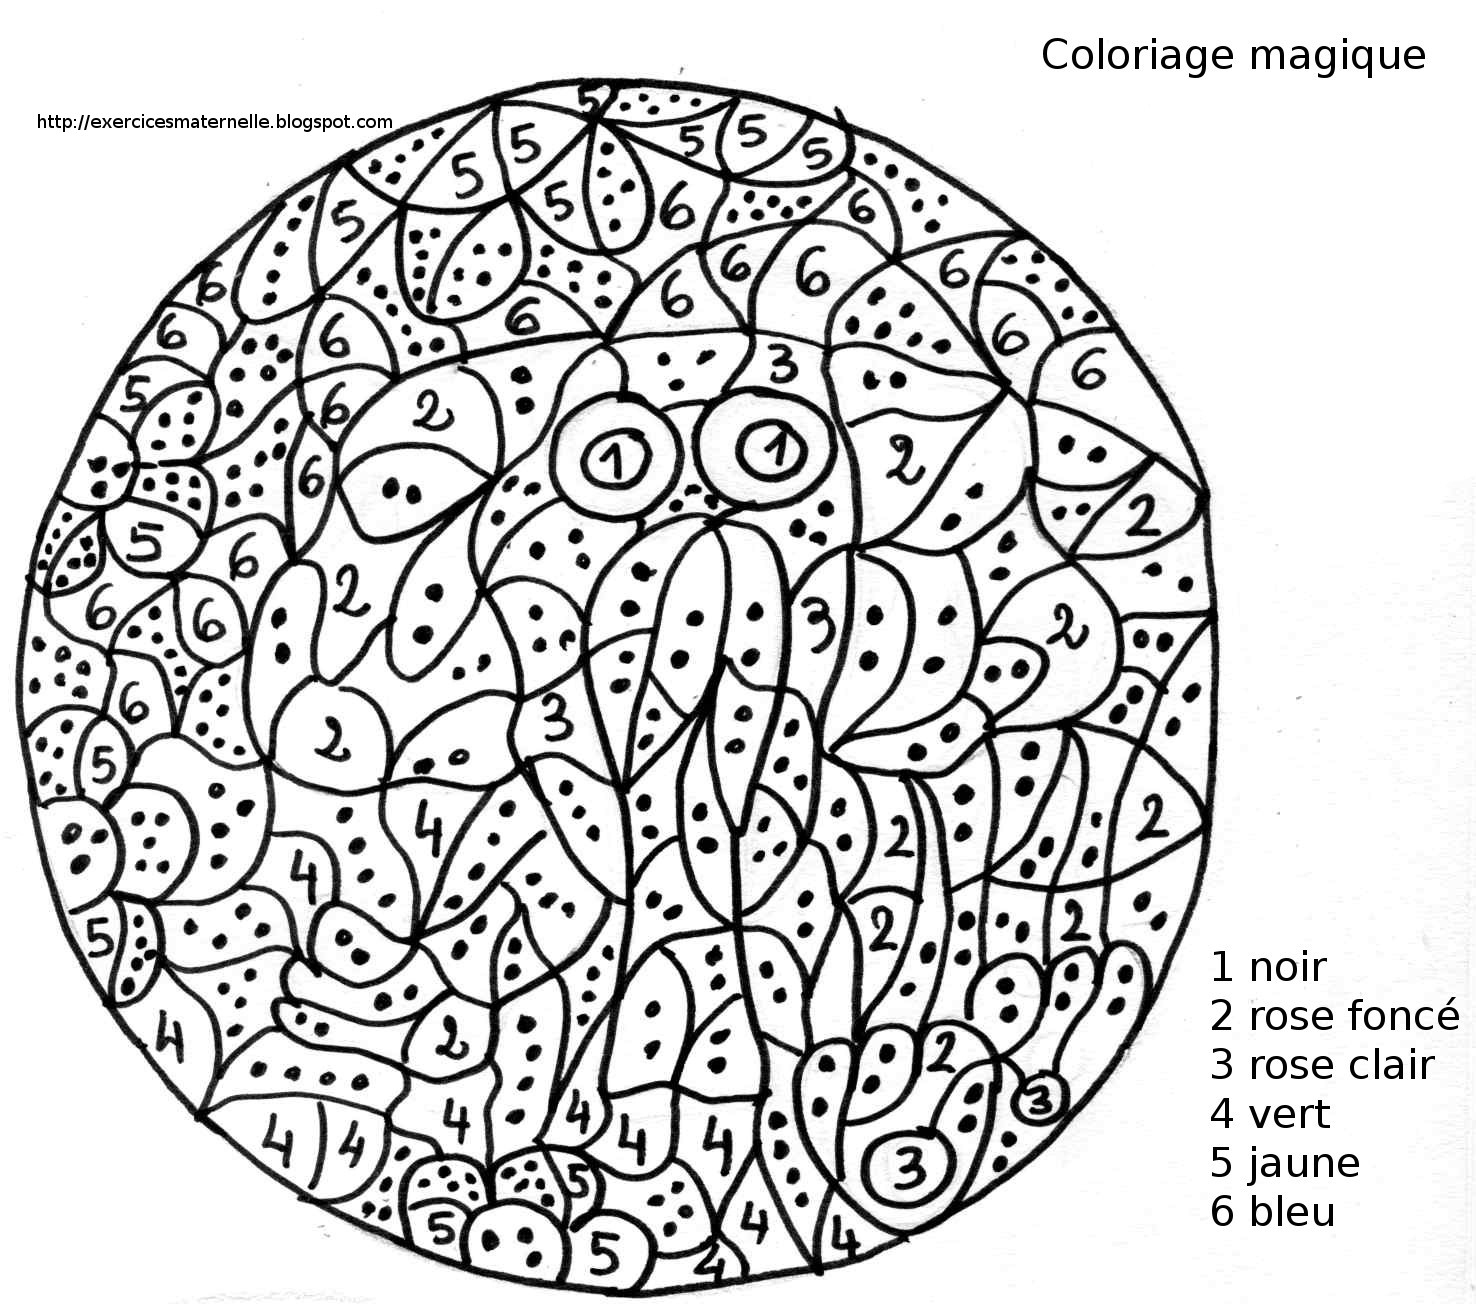 22 Dessins De Coloriage Magique Multiplication À Imprimer avec Coloriage Magique 6 Ans